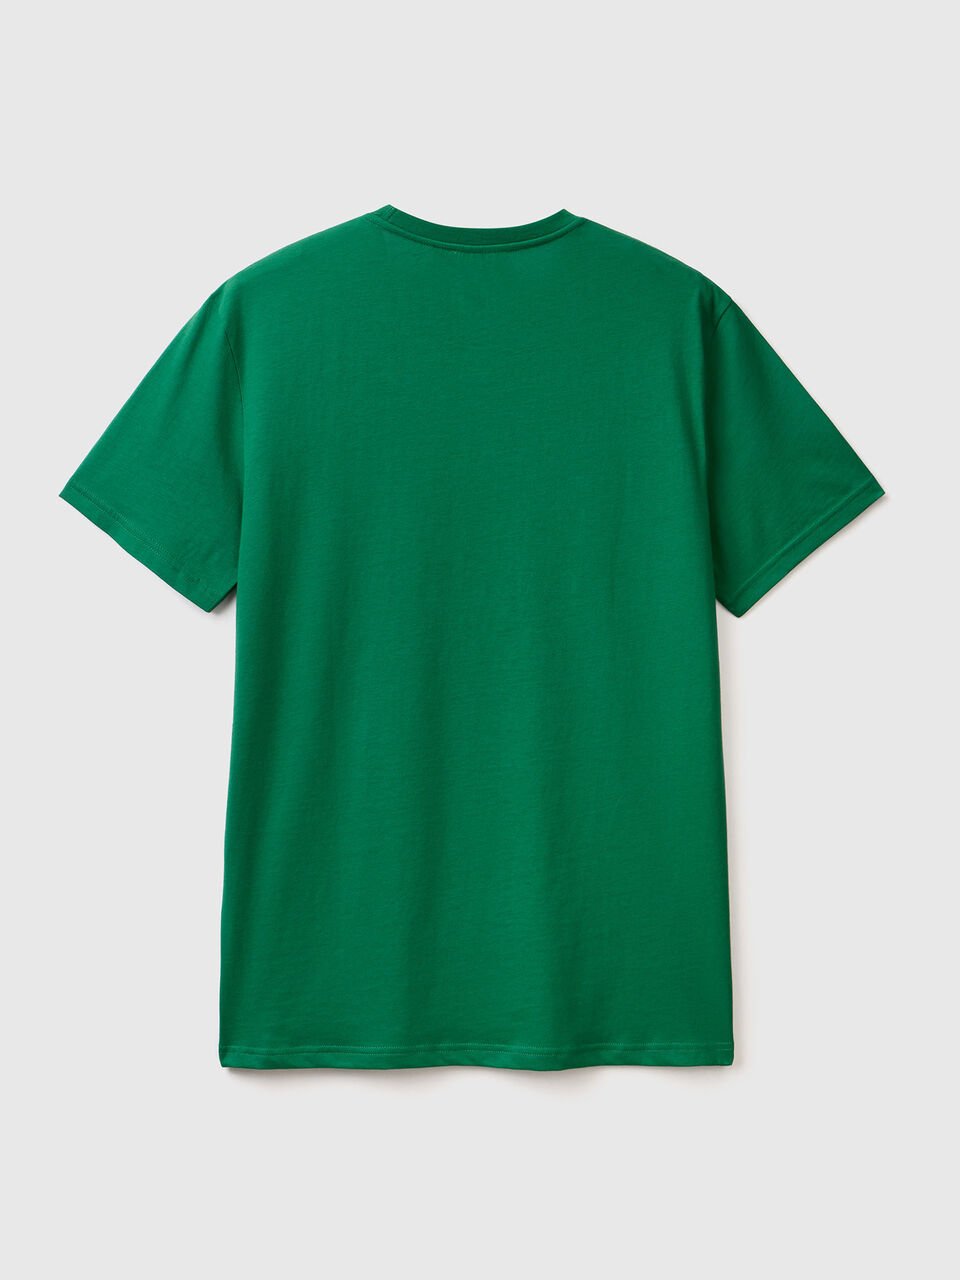 Camiseta verde oscuro - Verde Oscuro